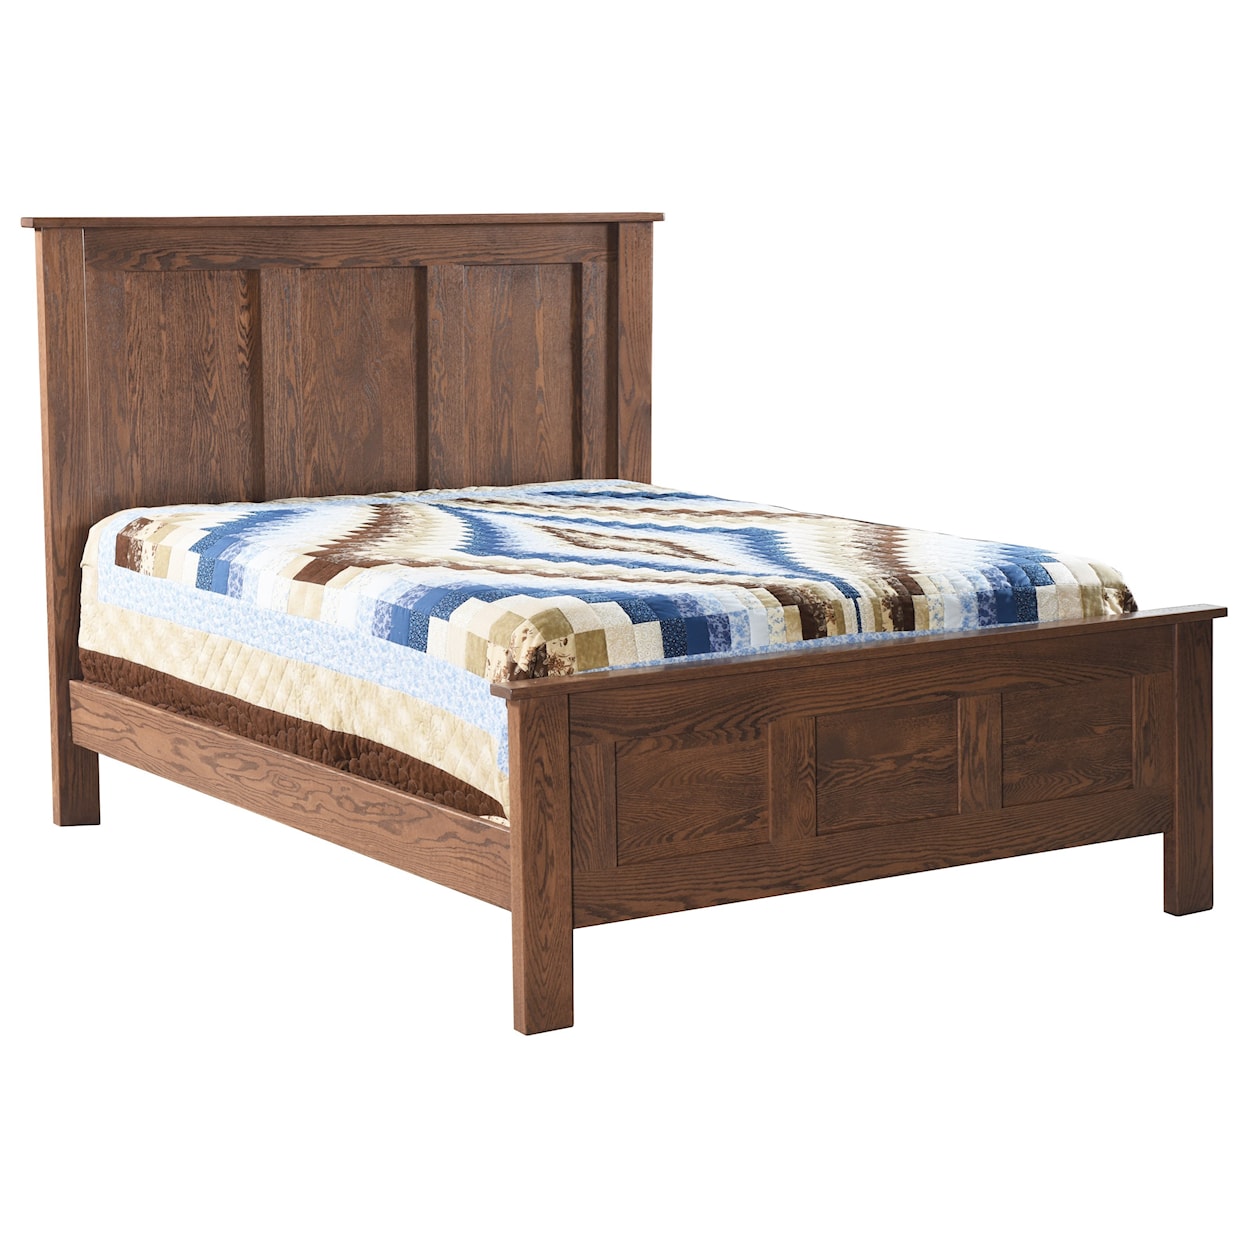 Archbold Furniture Franklin King Panel Bed